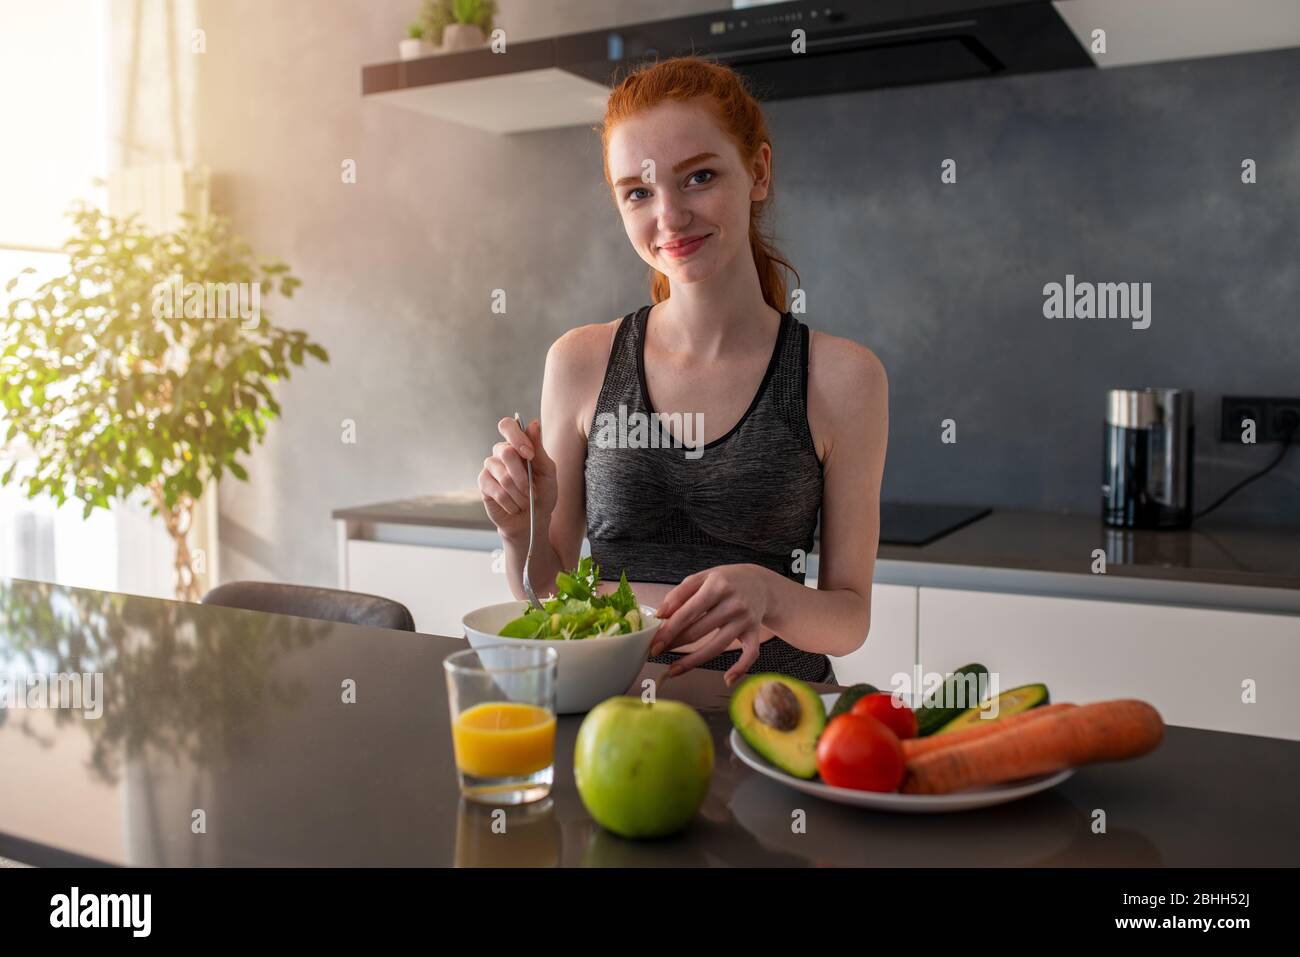 La ragazza atletica con i vestiti della palestra mangia un'insalata nella cucina Foto Stock